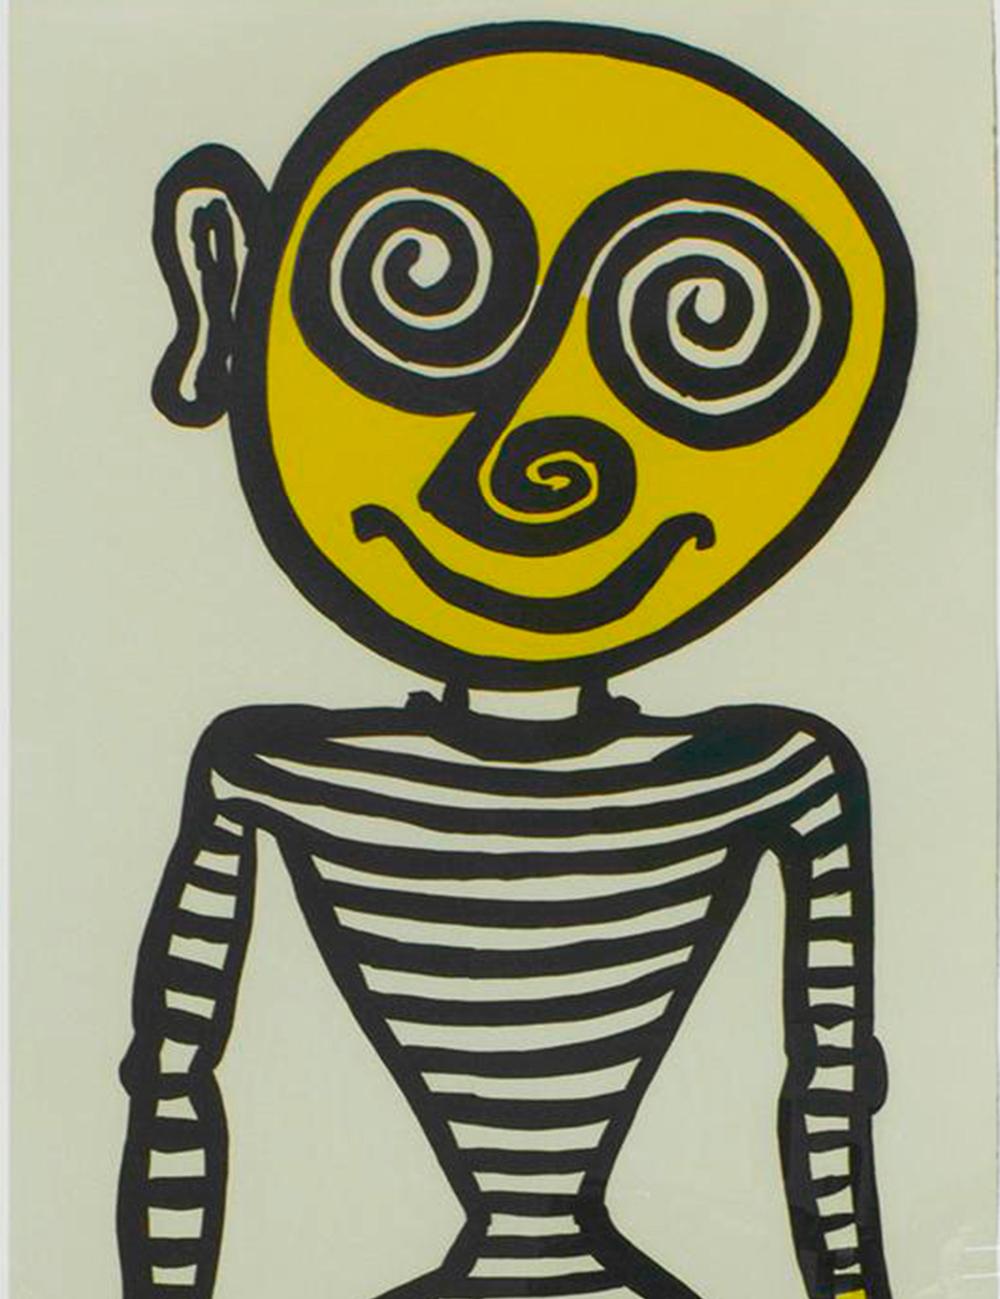 The Puppet Man, 1960. E. A - Print by Alexander Calder